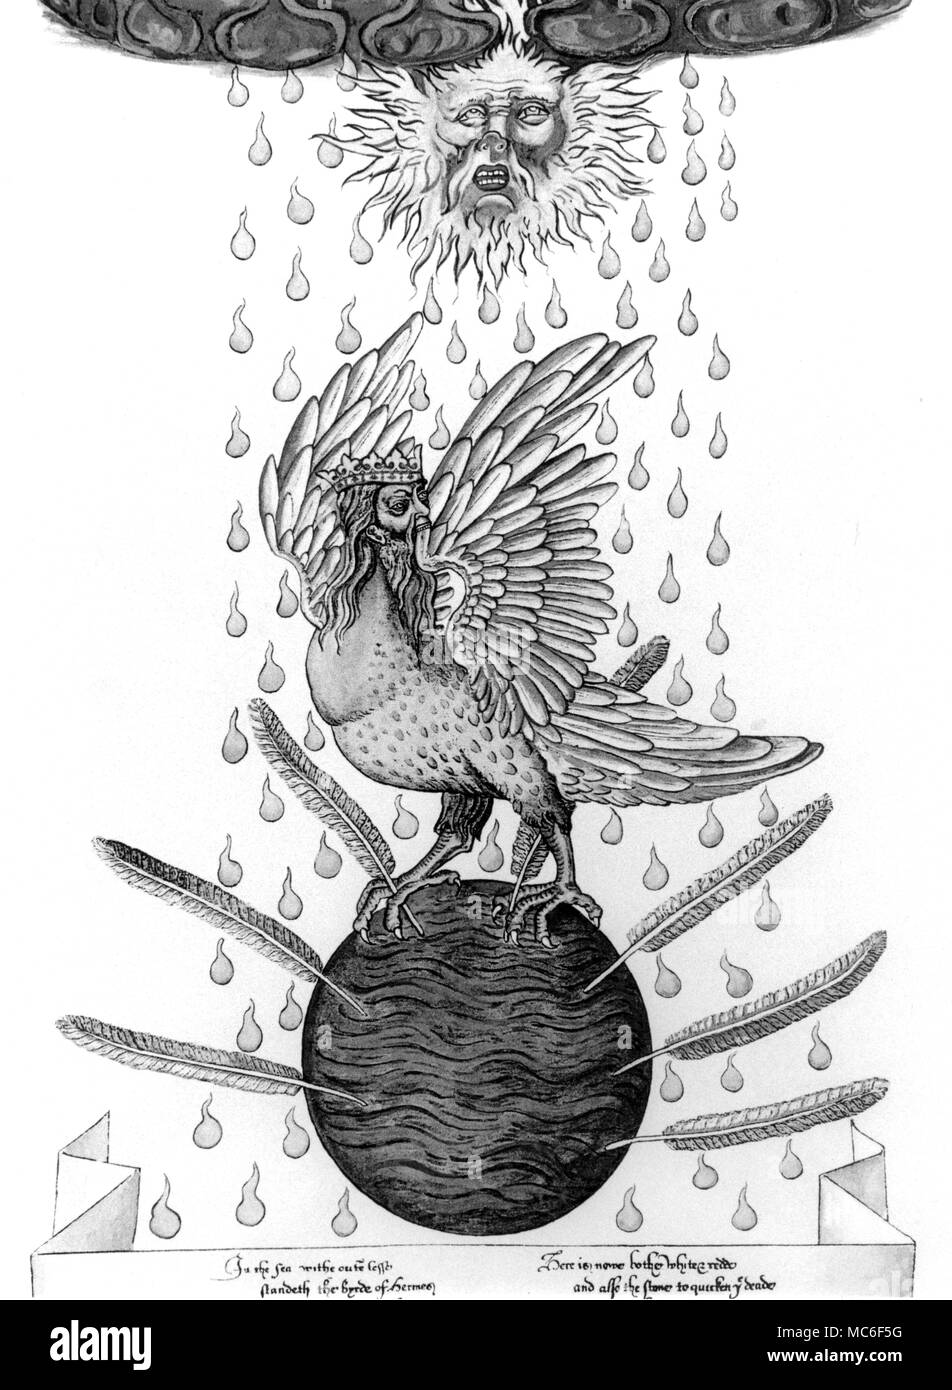 La Hermes Bird, stando in piedi in mezzo ai sette piume che perforano le acque da cui verranno rigenerati. Il solare di acqua che cade in goccioline round l'uccello è simbolo di rinascita, o reincarntion, che è il destino di phoenix-come un uccello. Da una copia di George Ripley di scorrimento alchemici, circa 1470. Foto Stock